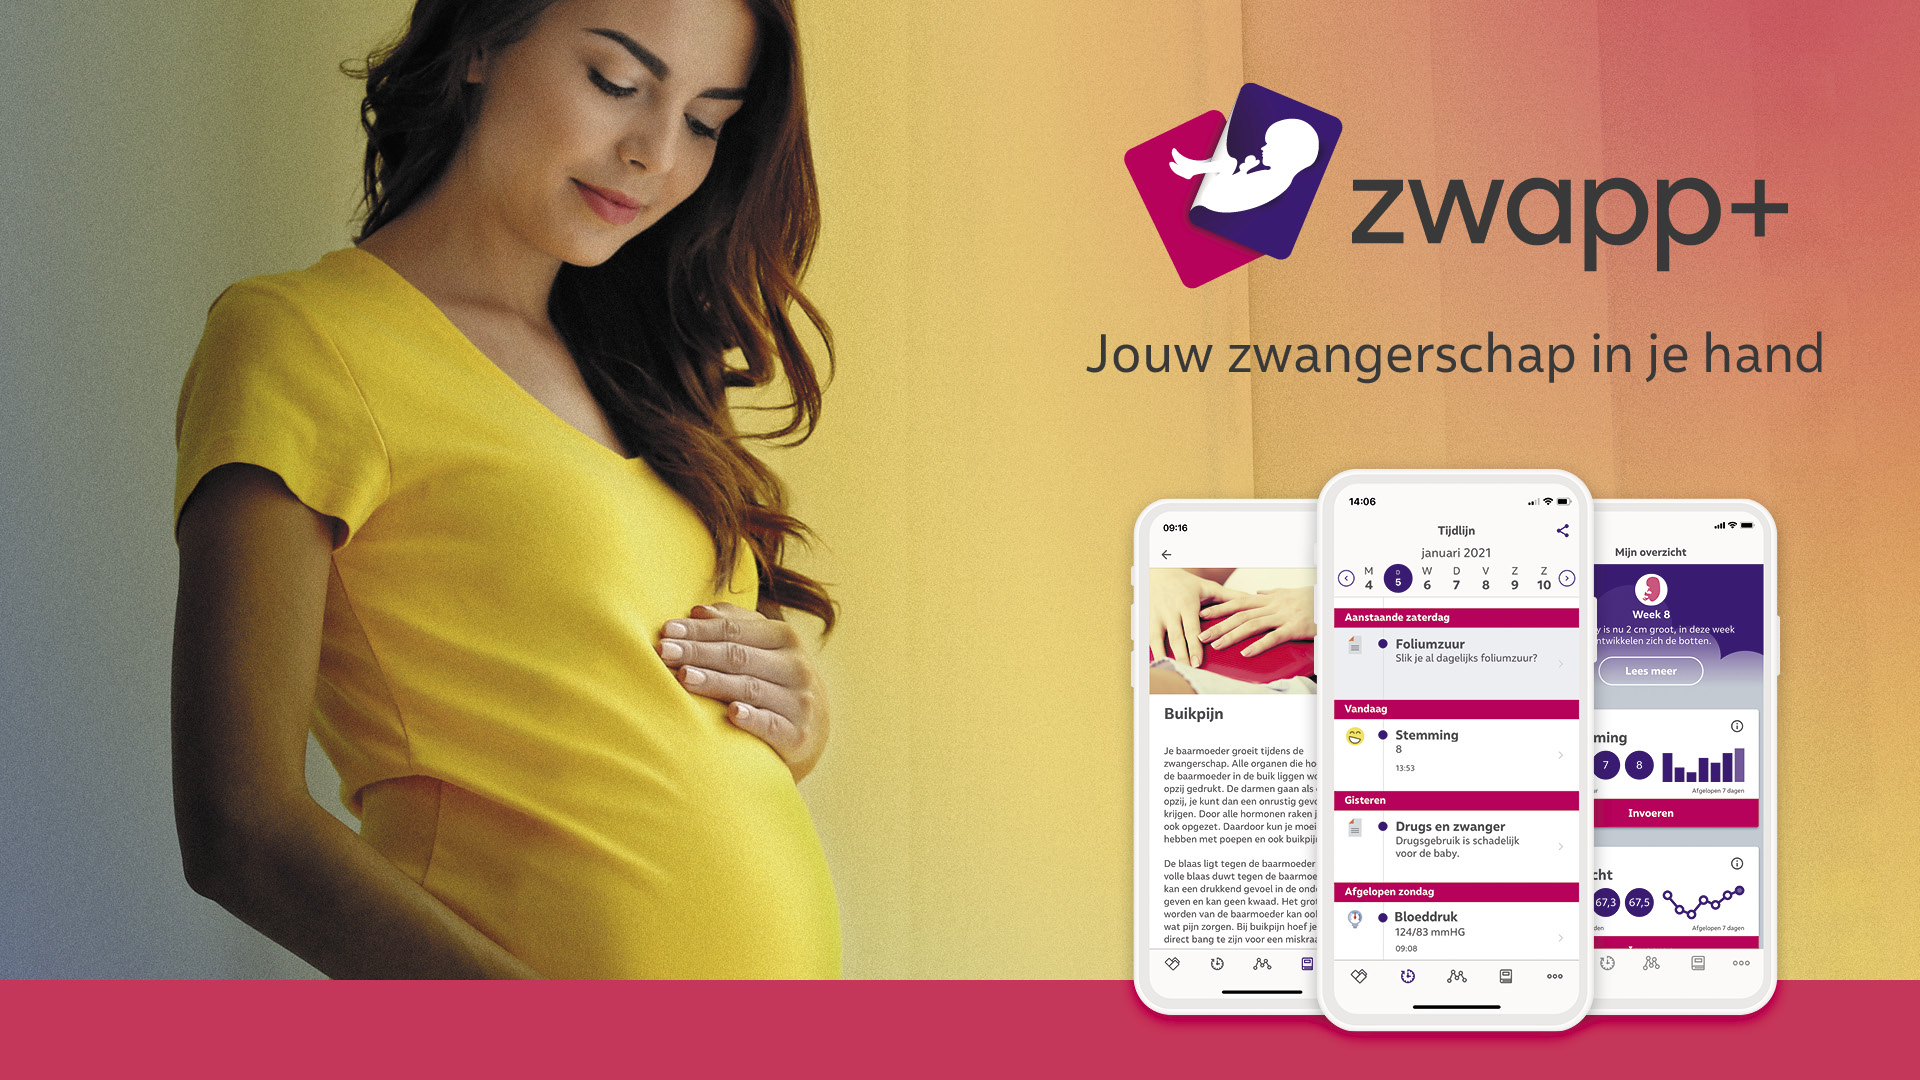 Stap Voor Stap Door De Zwangerschap Met ZwApp+